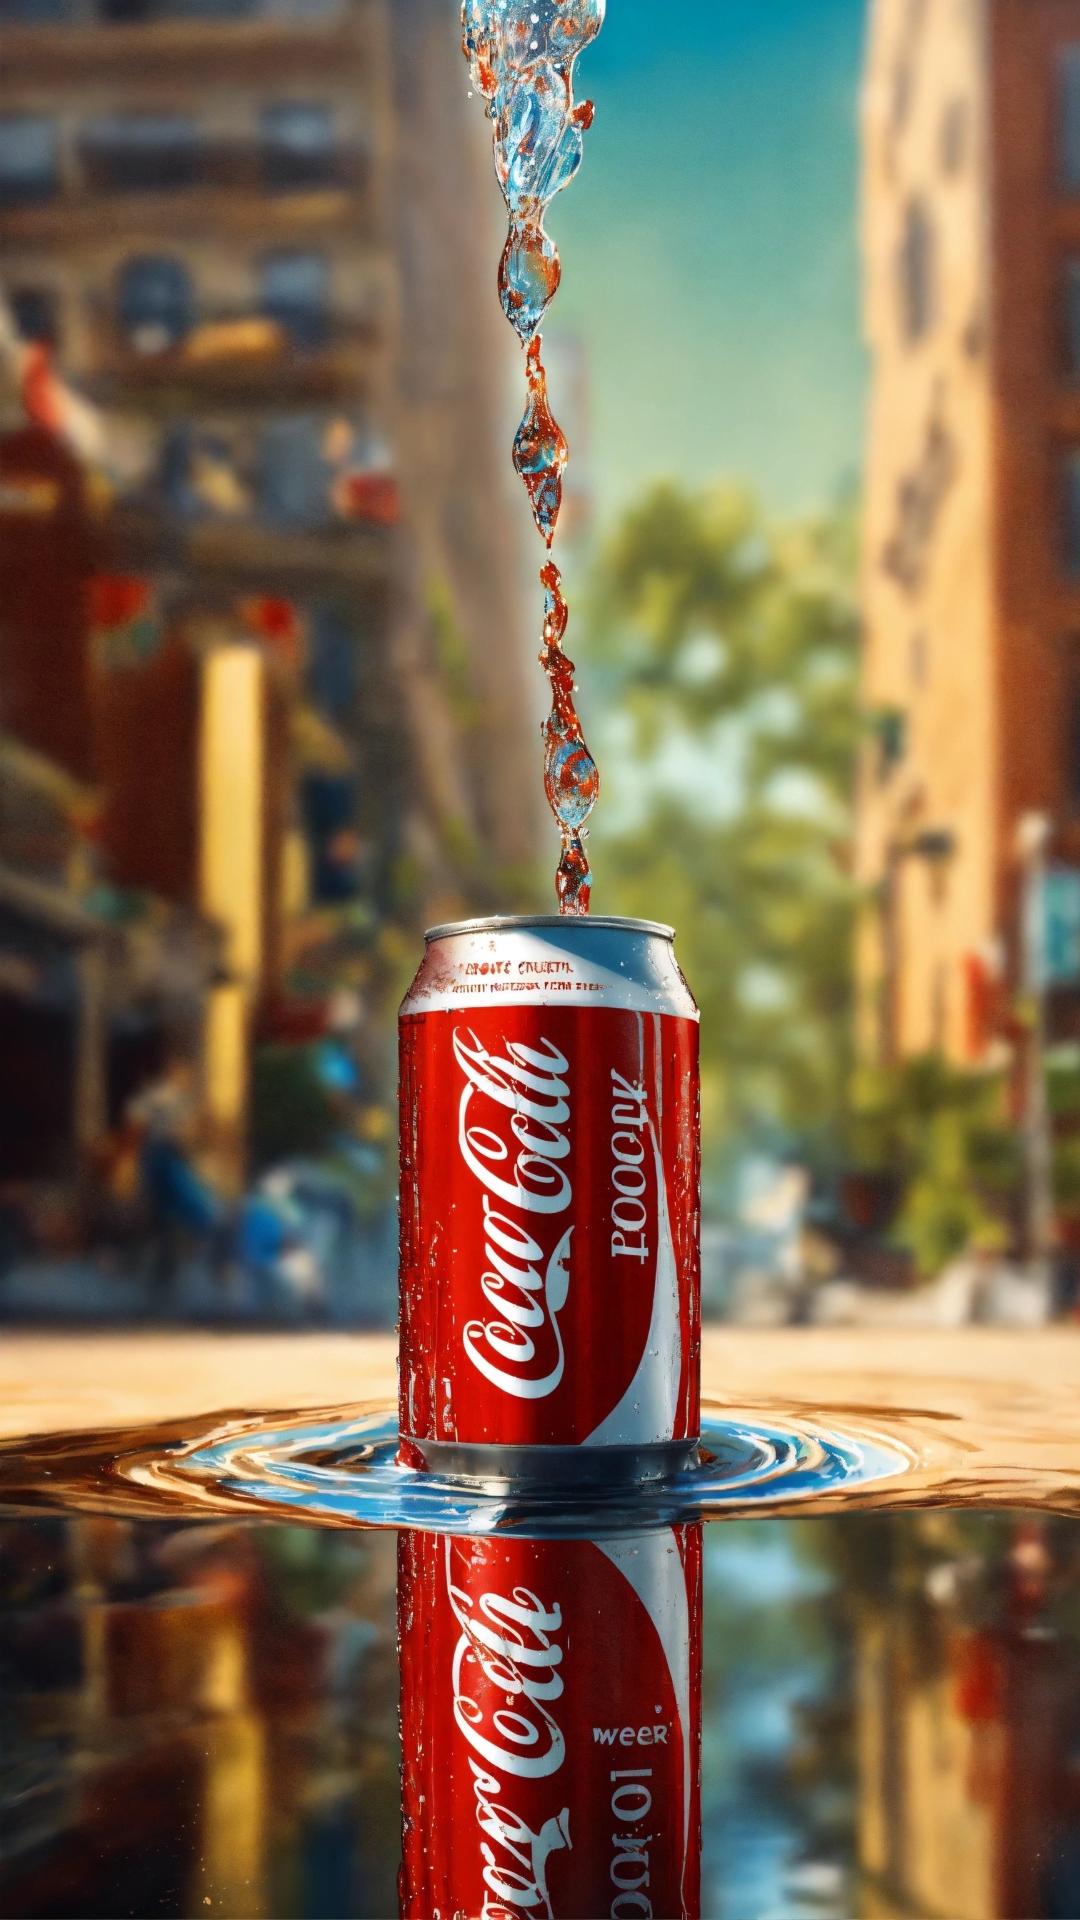 किन-किन देशों में कोका कोला की एंट्री पर है बैन? 